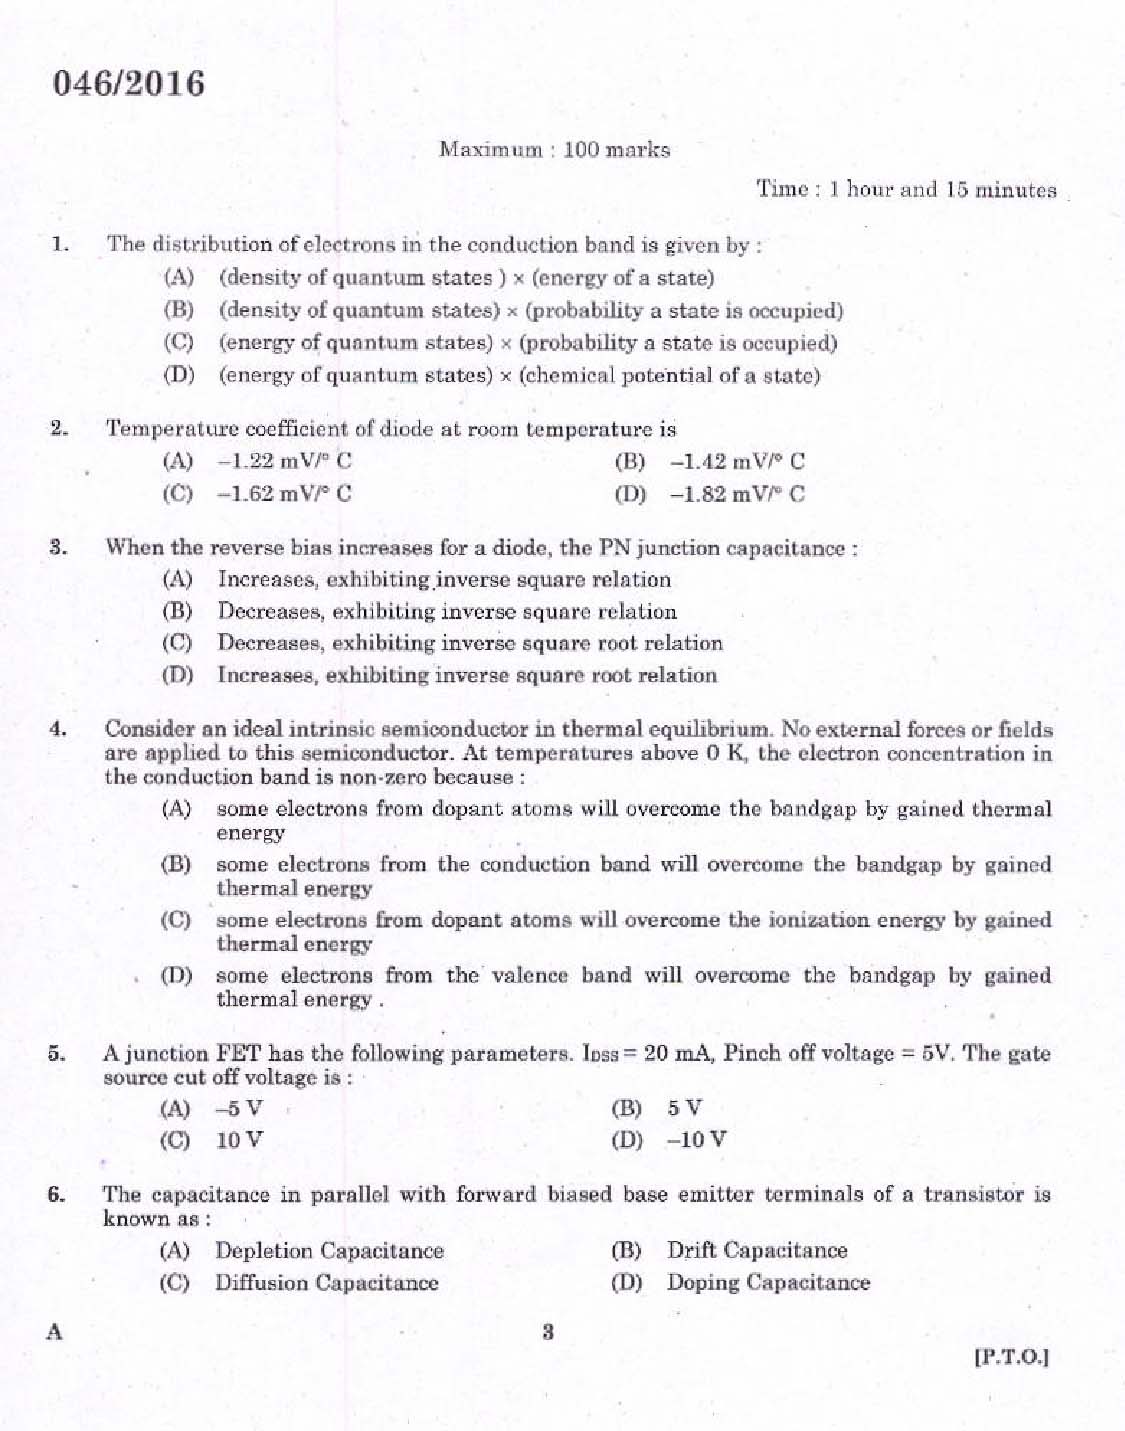 KPSC Vocational Teacher Exam 2016 Code 462016 1